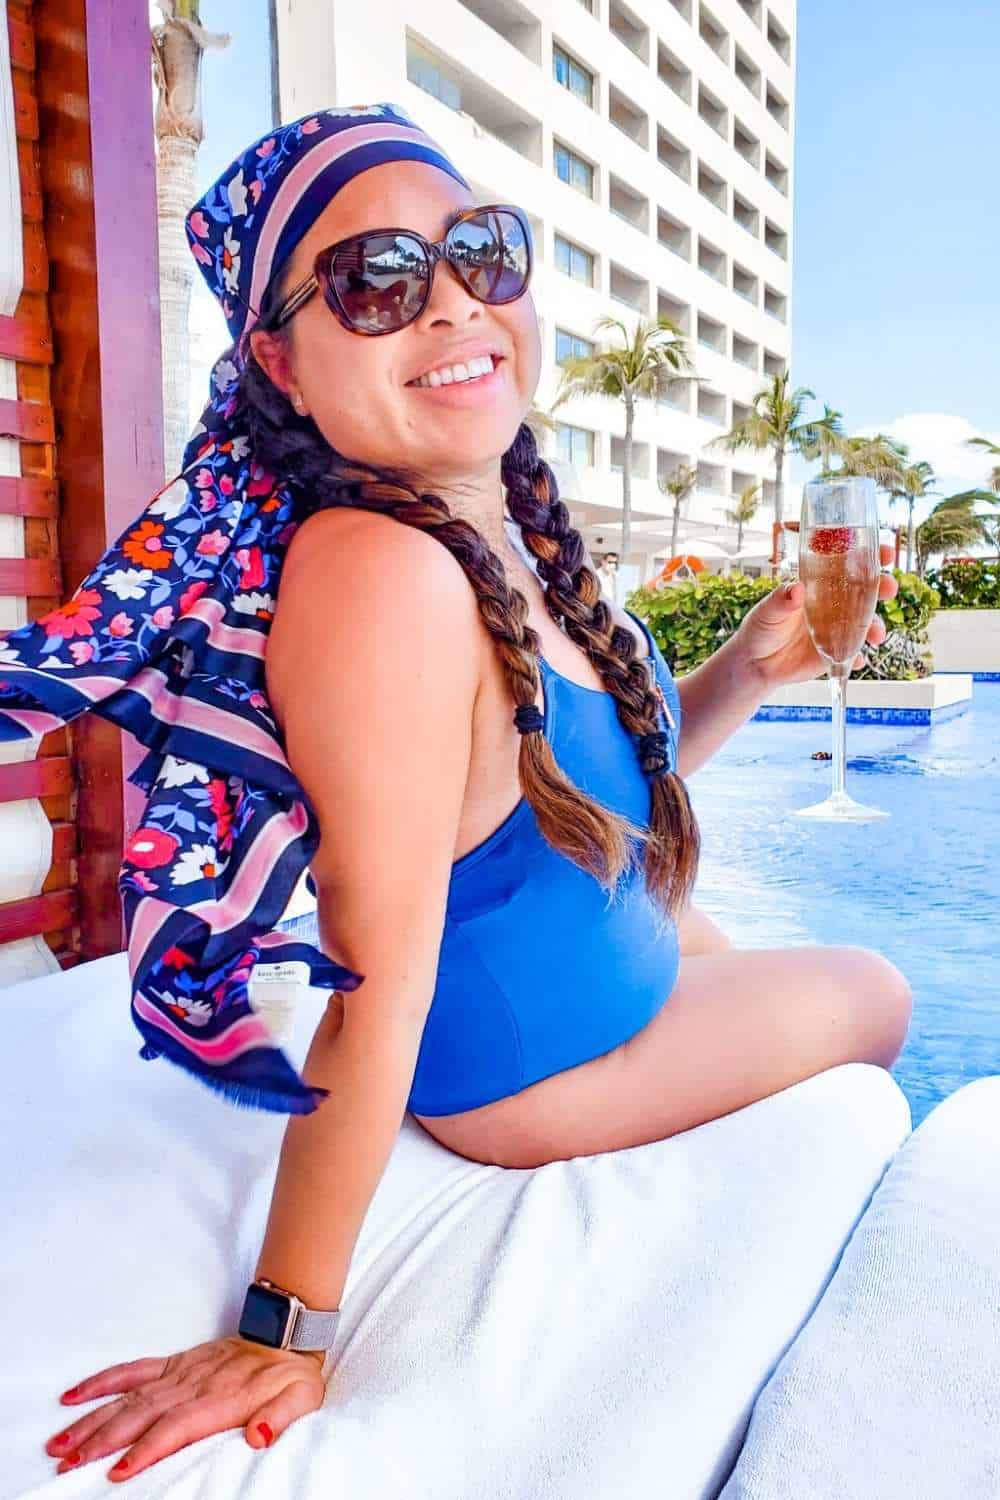 Hyatt Ziva Cancun club pool and cabana